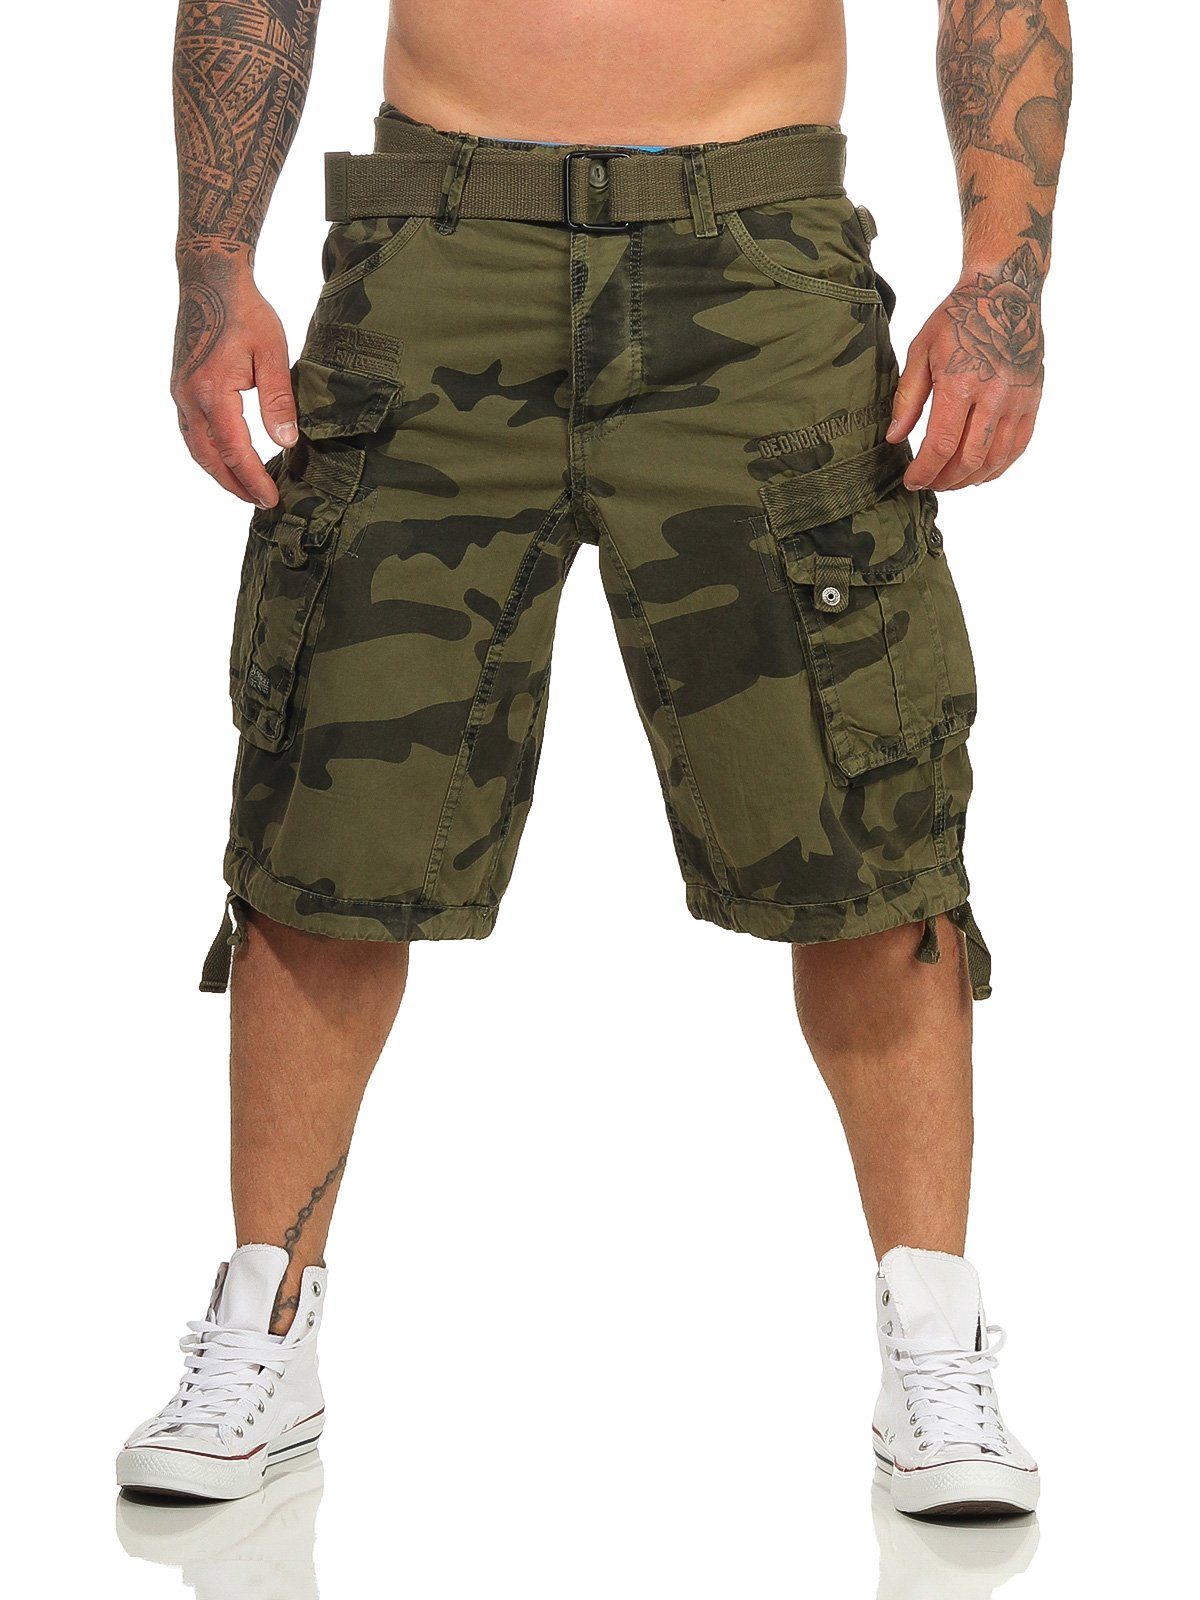 PANORAMIQUE Herren camouflage unifarben Shorts kurze abnehmbarem / Shorts, (mit Geographical kaki Cargoshorts Hose, Gürtel) Norway